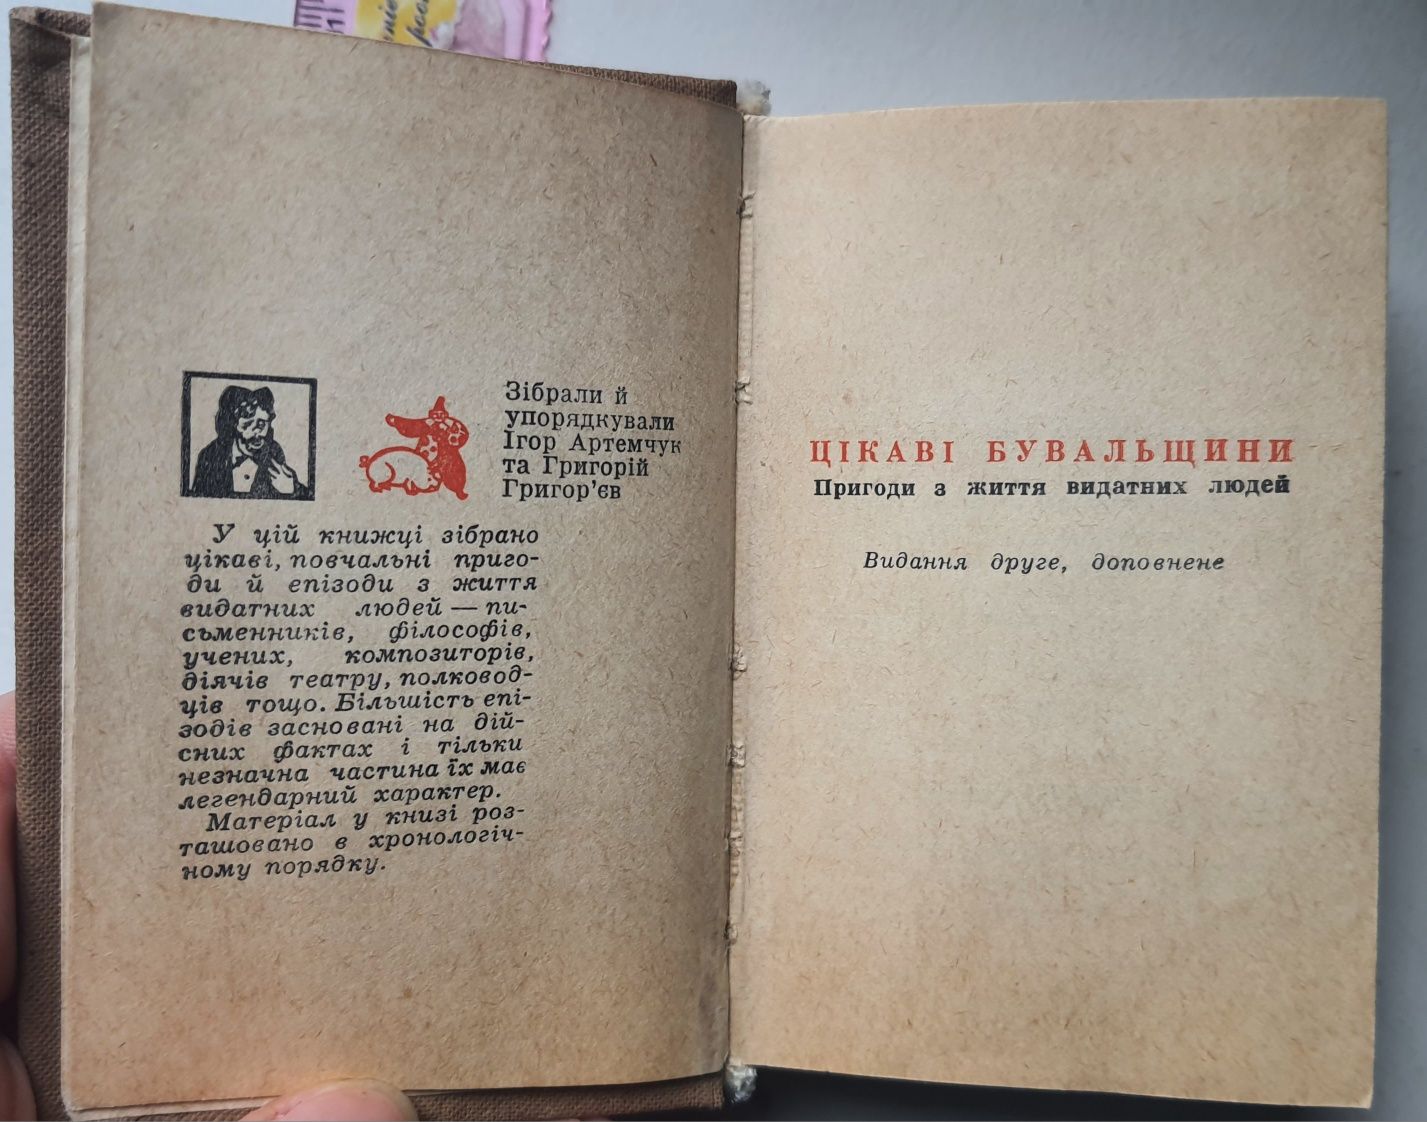 Цікаві бувальщини "пригоди з життя видатних людей", Київ, 1969